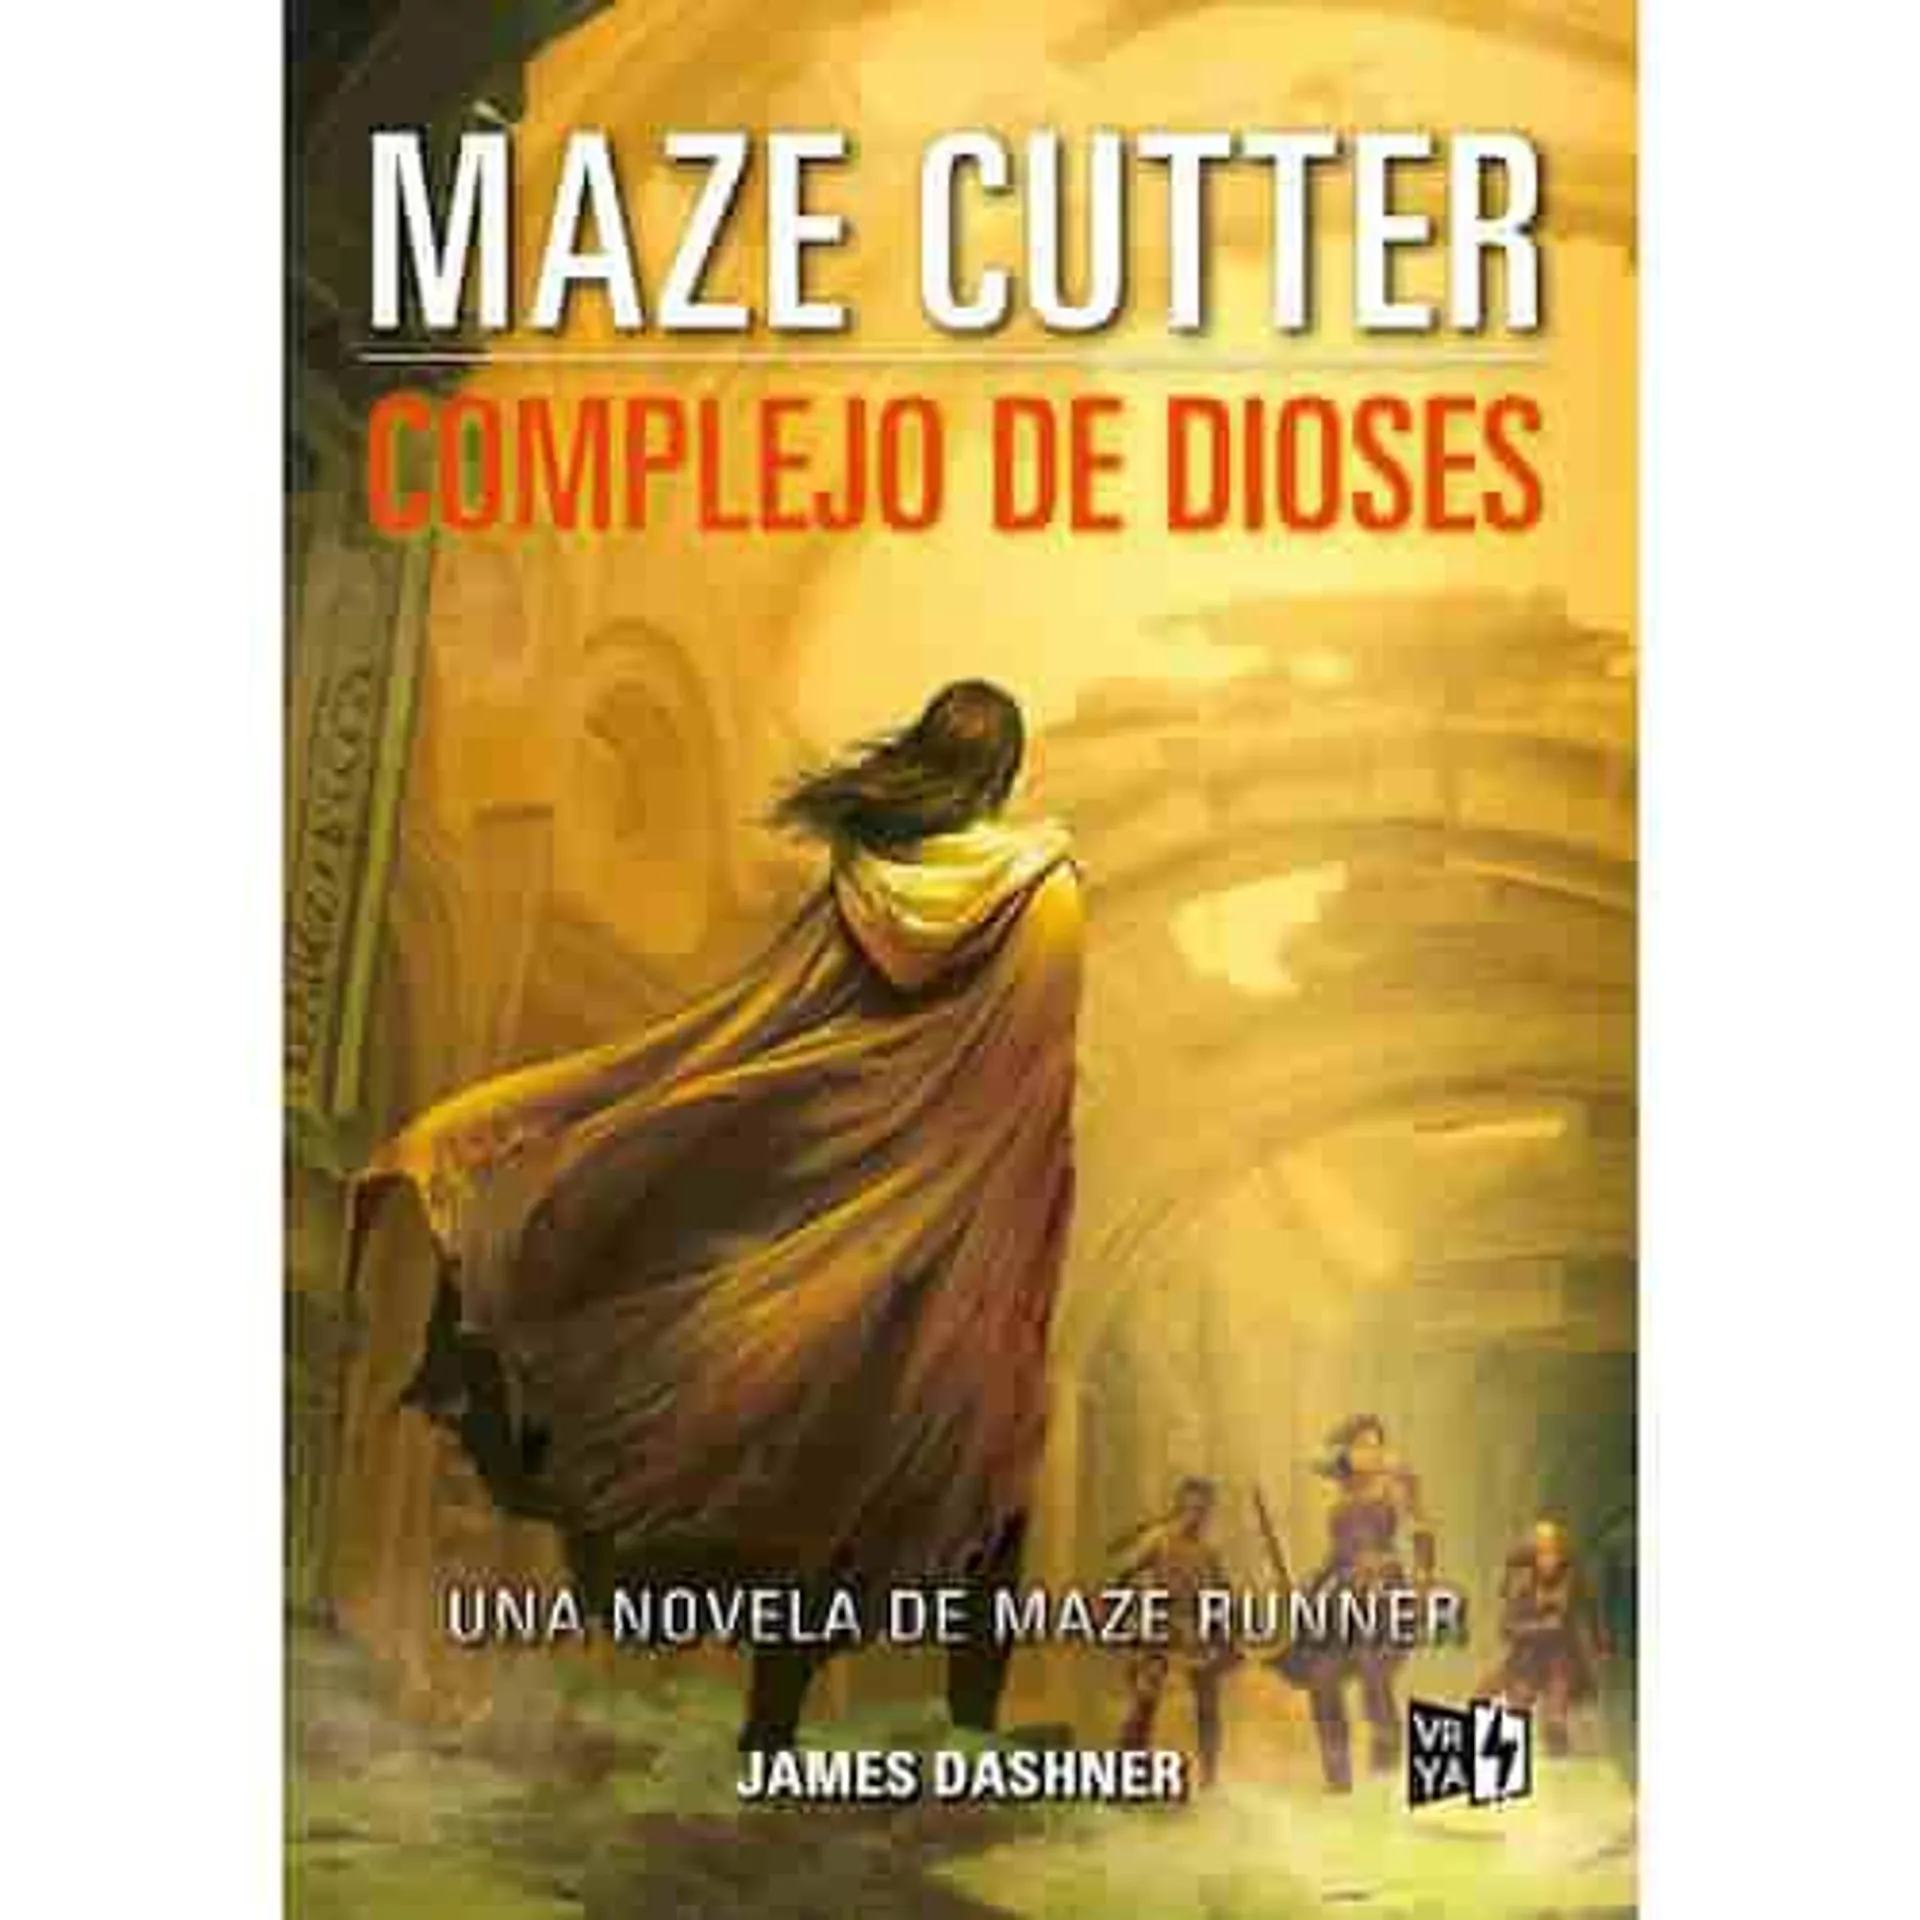 Maze Cutter, complejo de dioses